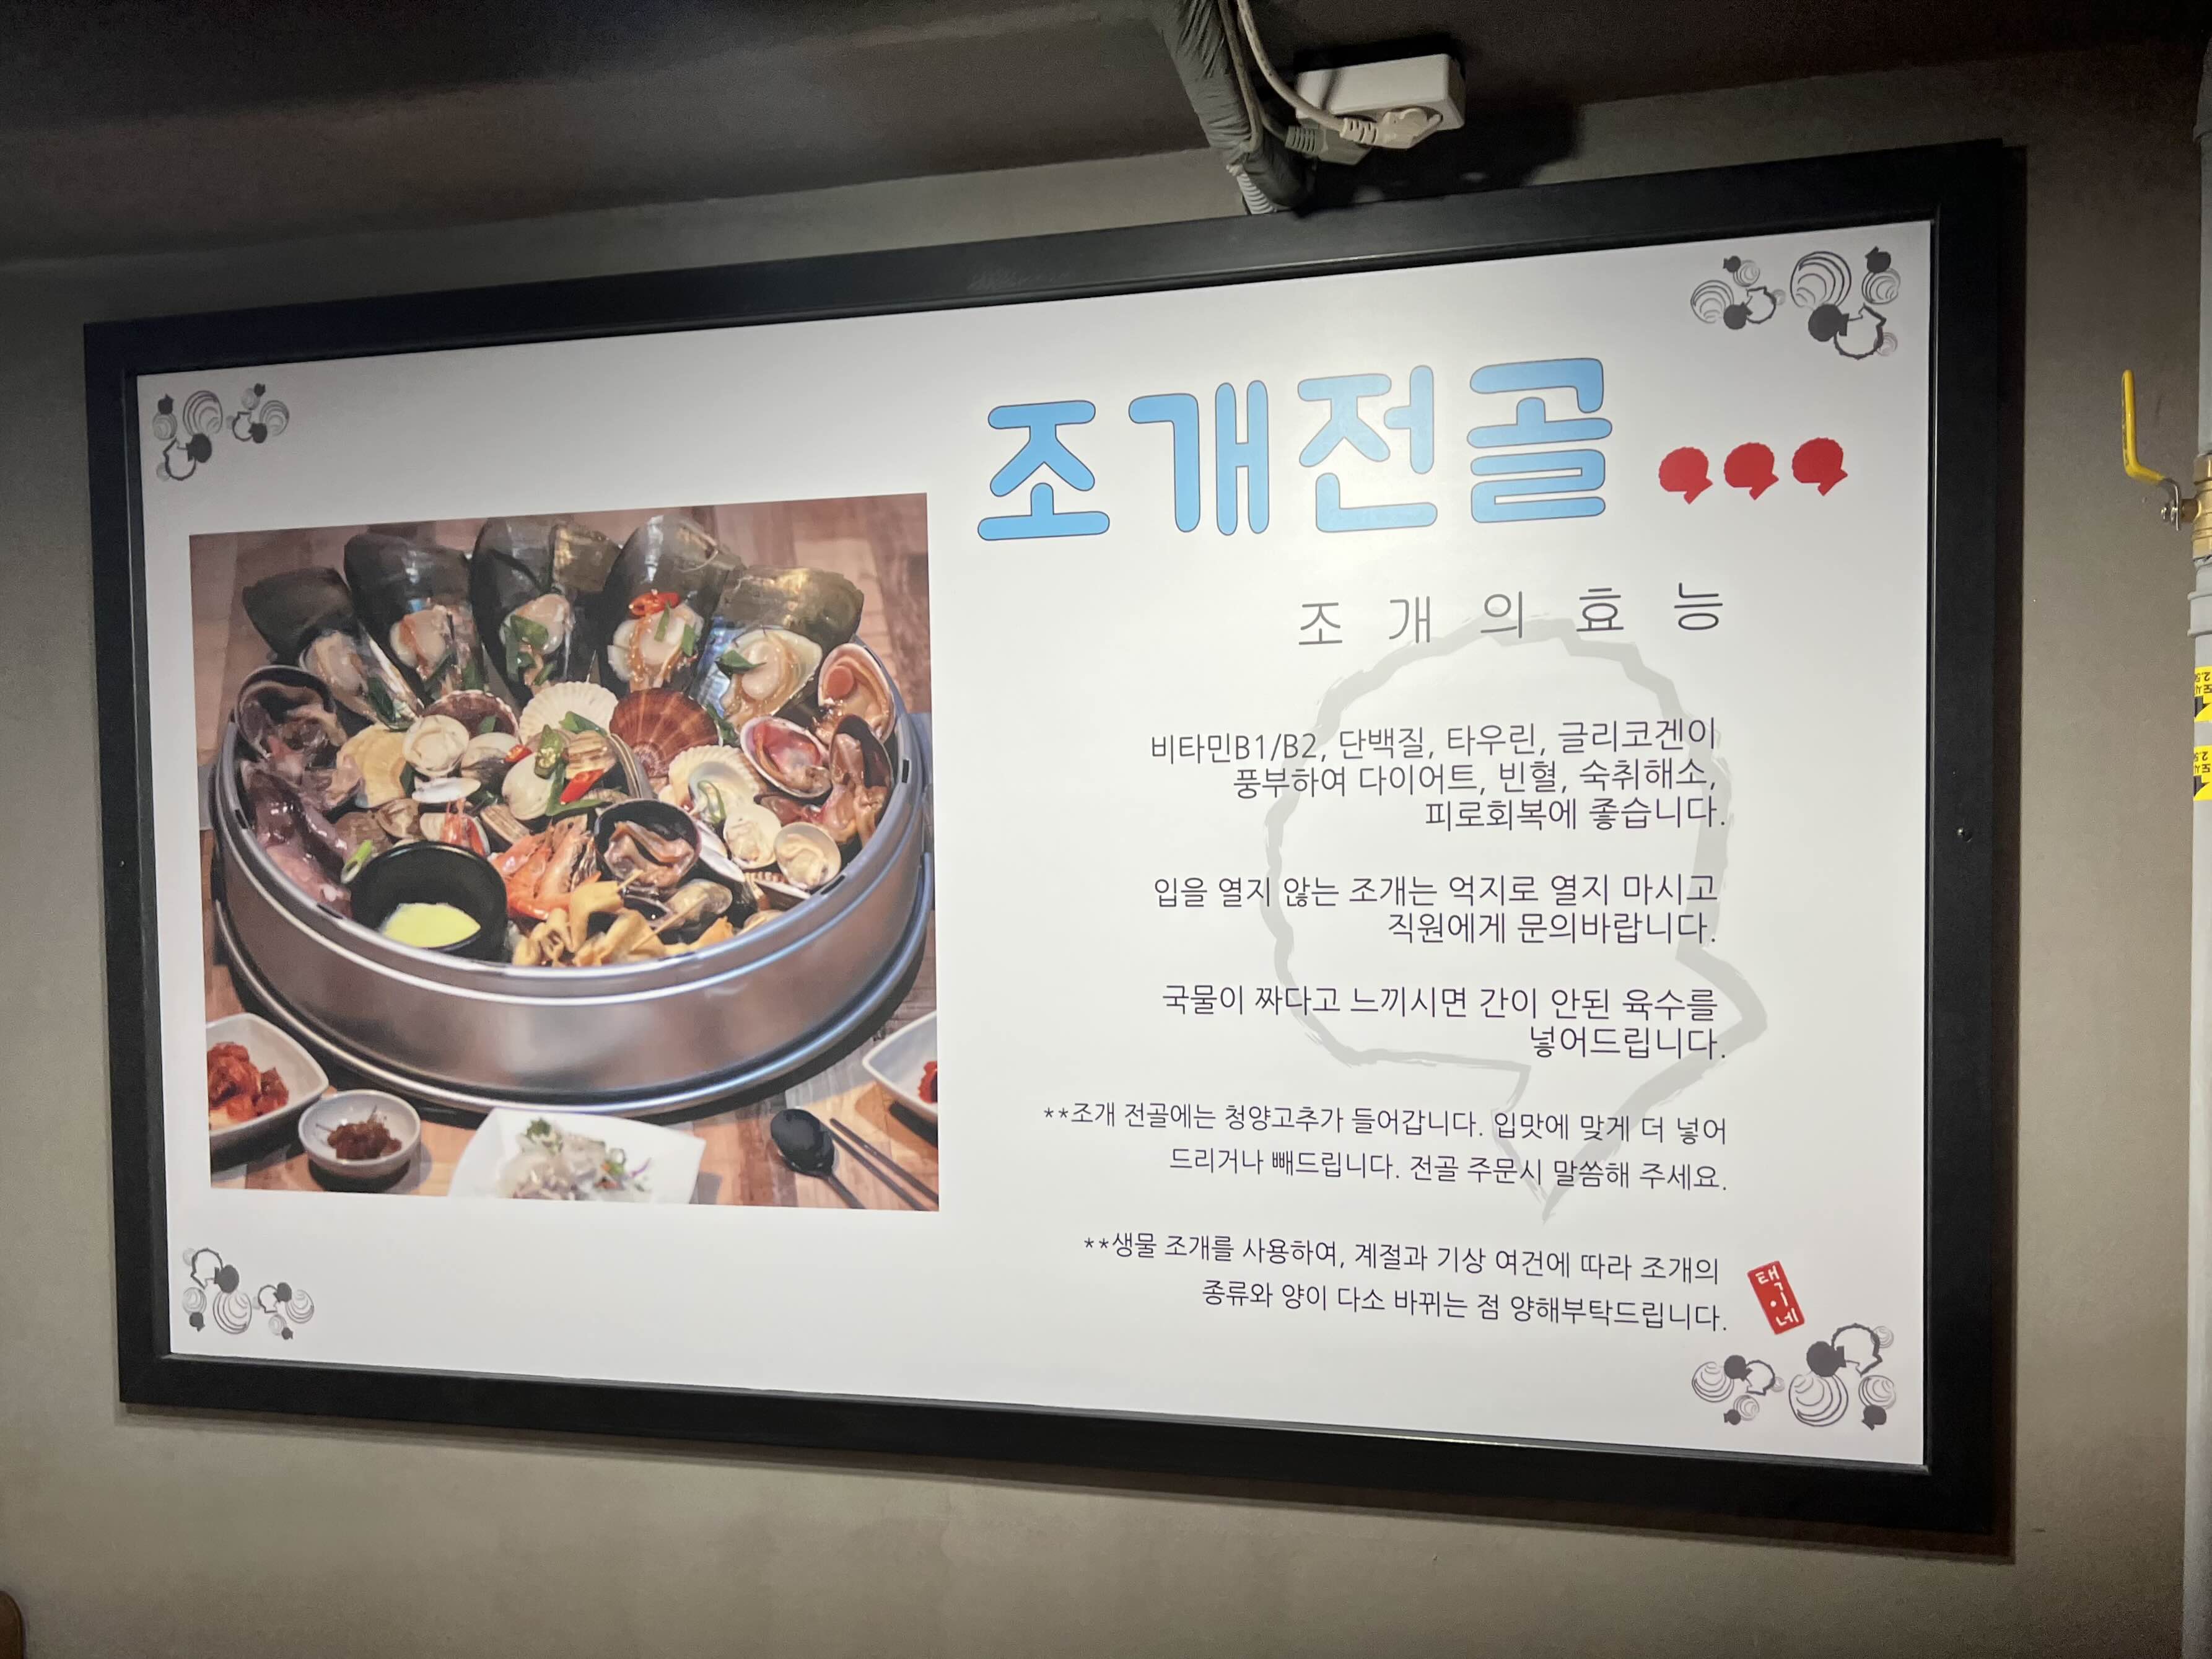 서울 조개찜 맛집 택이네조개전골 조개의 효능